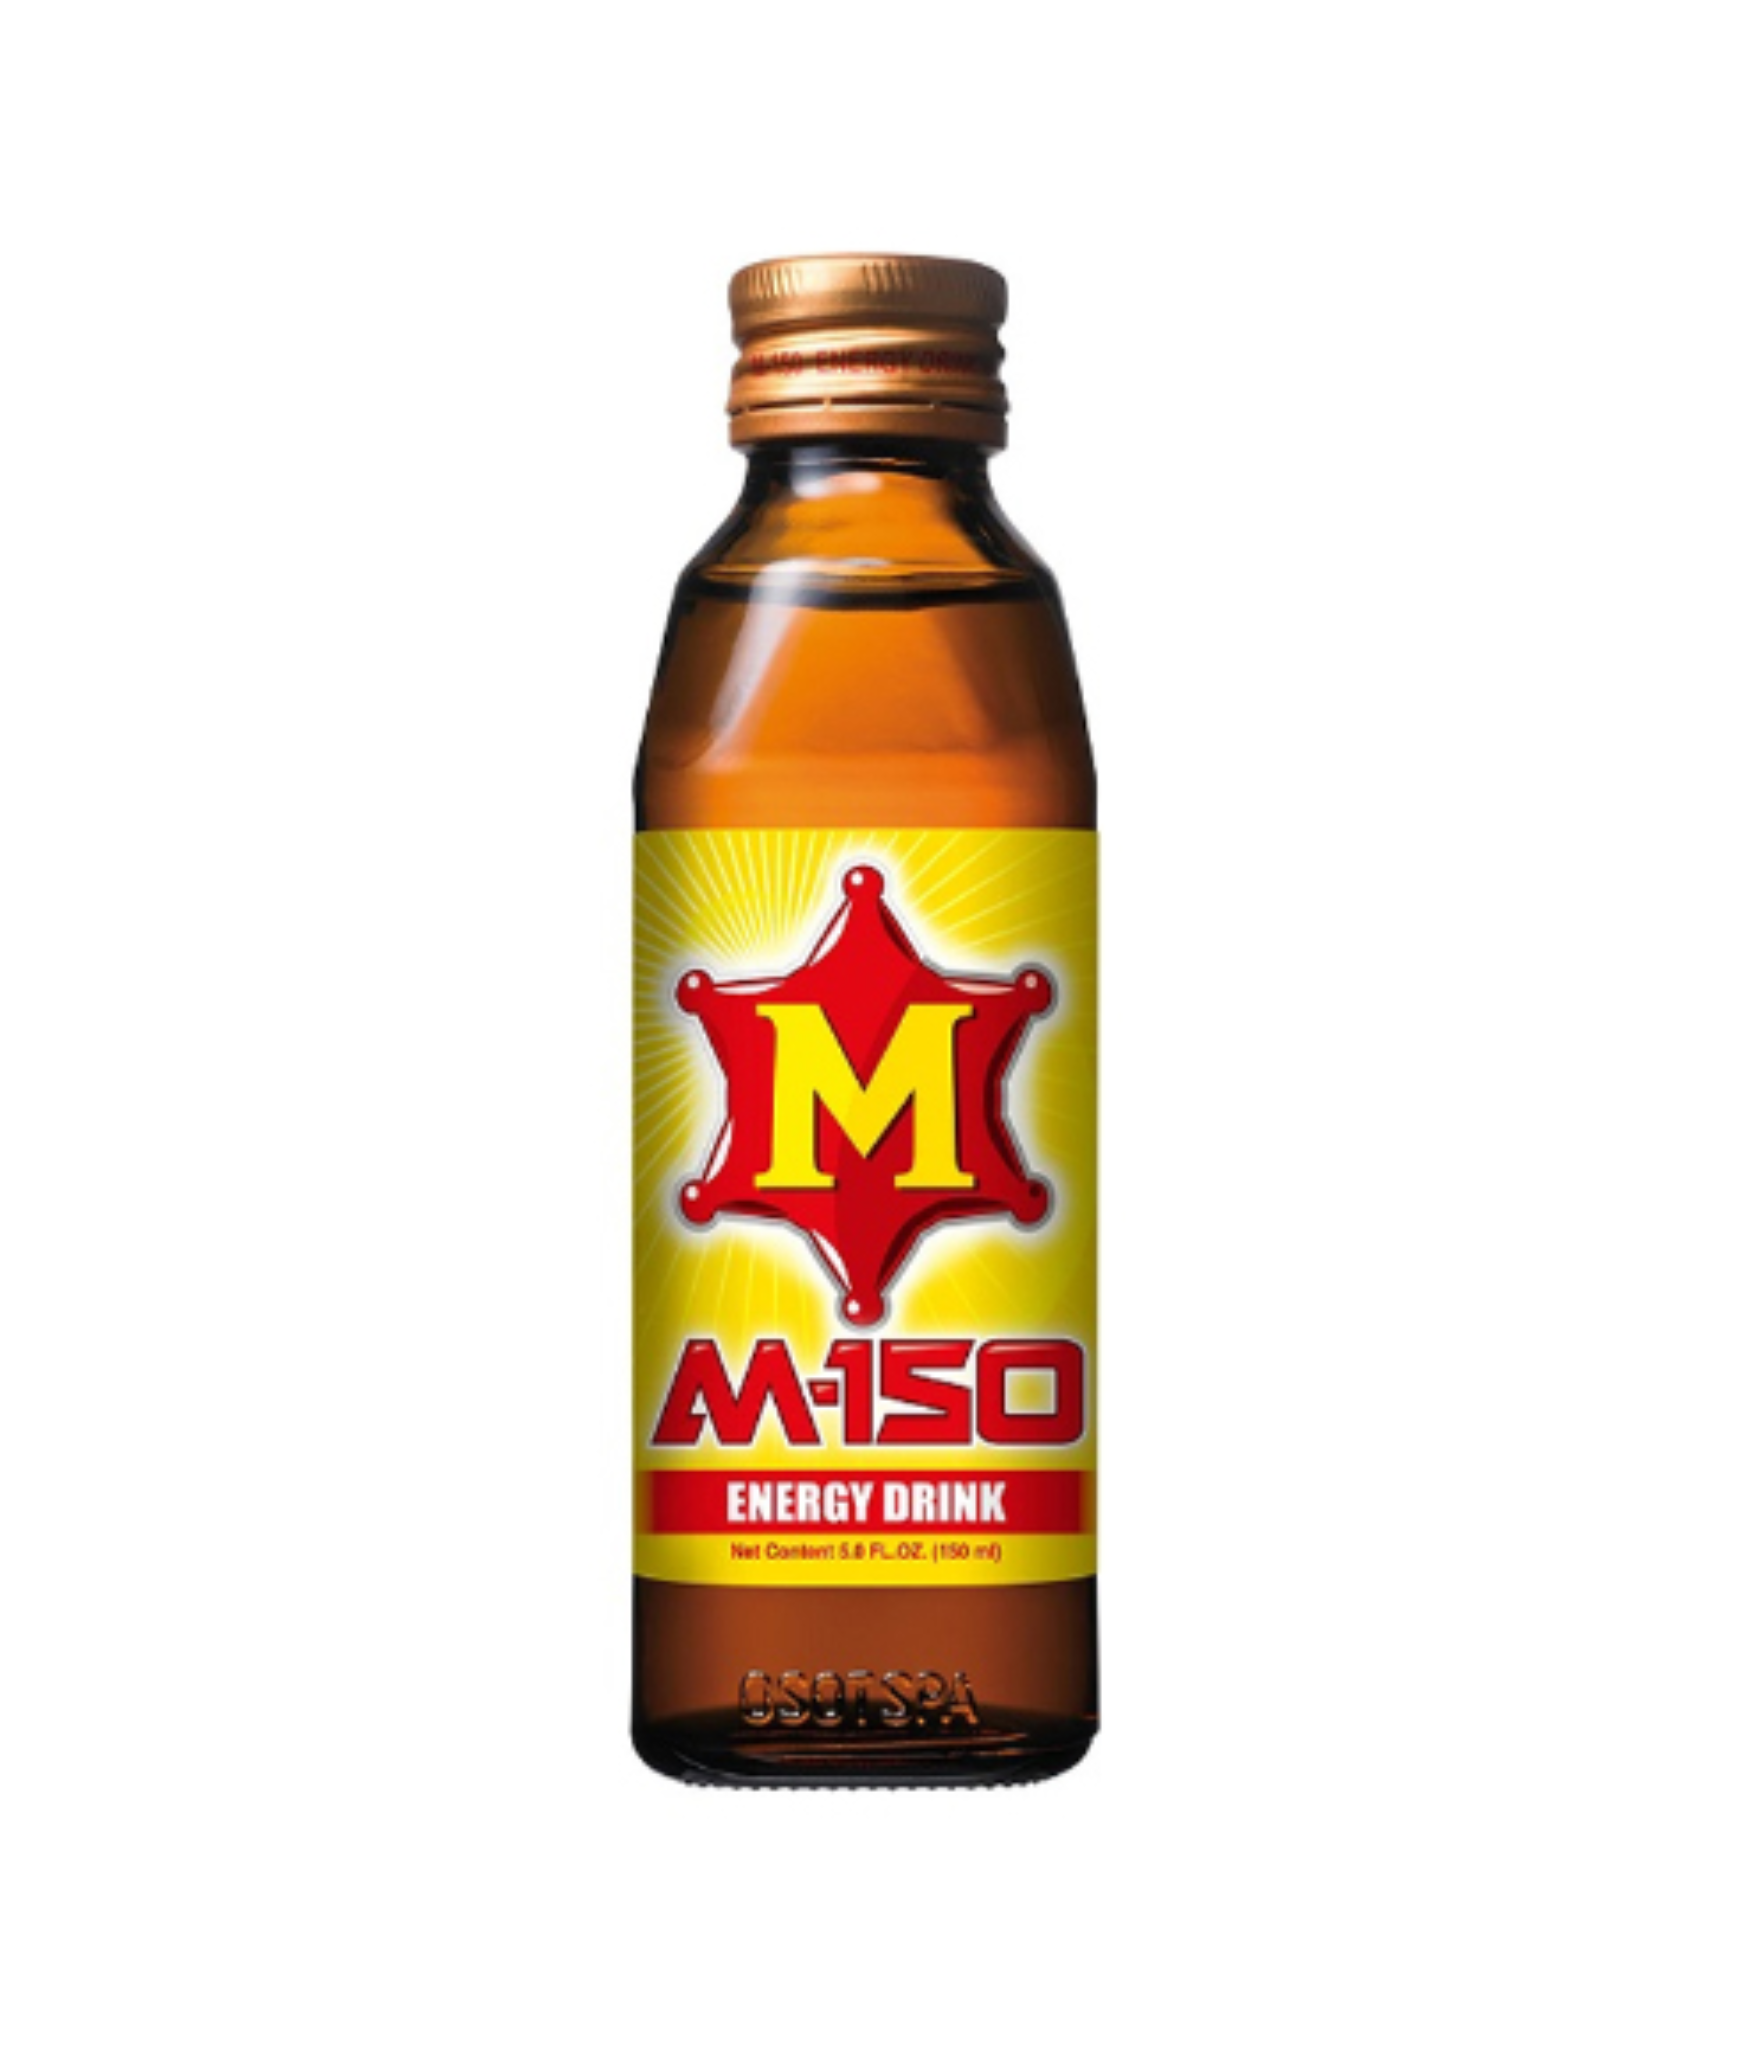 M-150 Energy drink